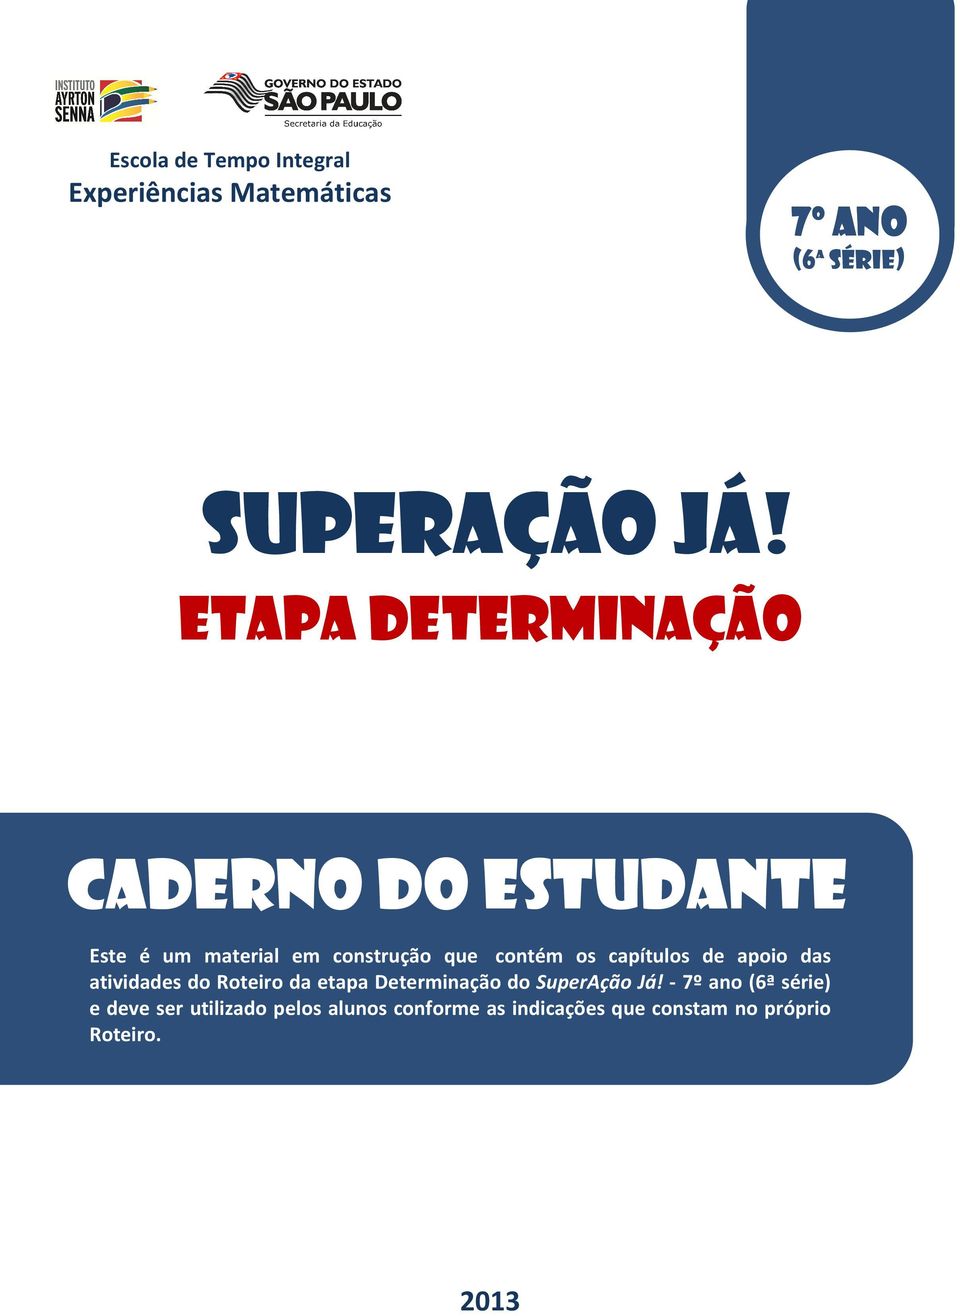 capítulos de apoio das atividades do Roteiro da etapa Determinação do SuperAção Já!